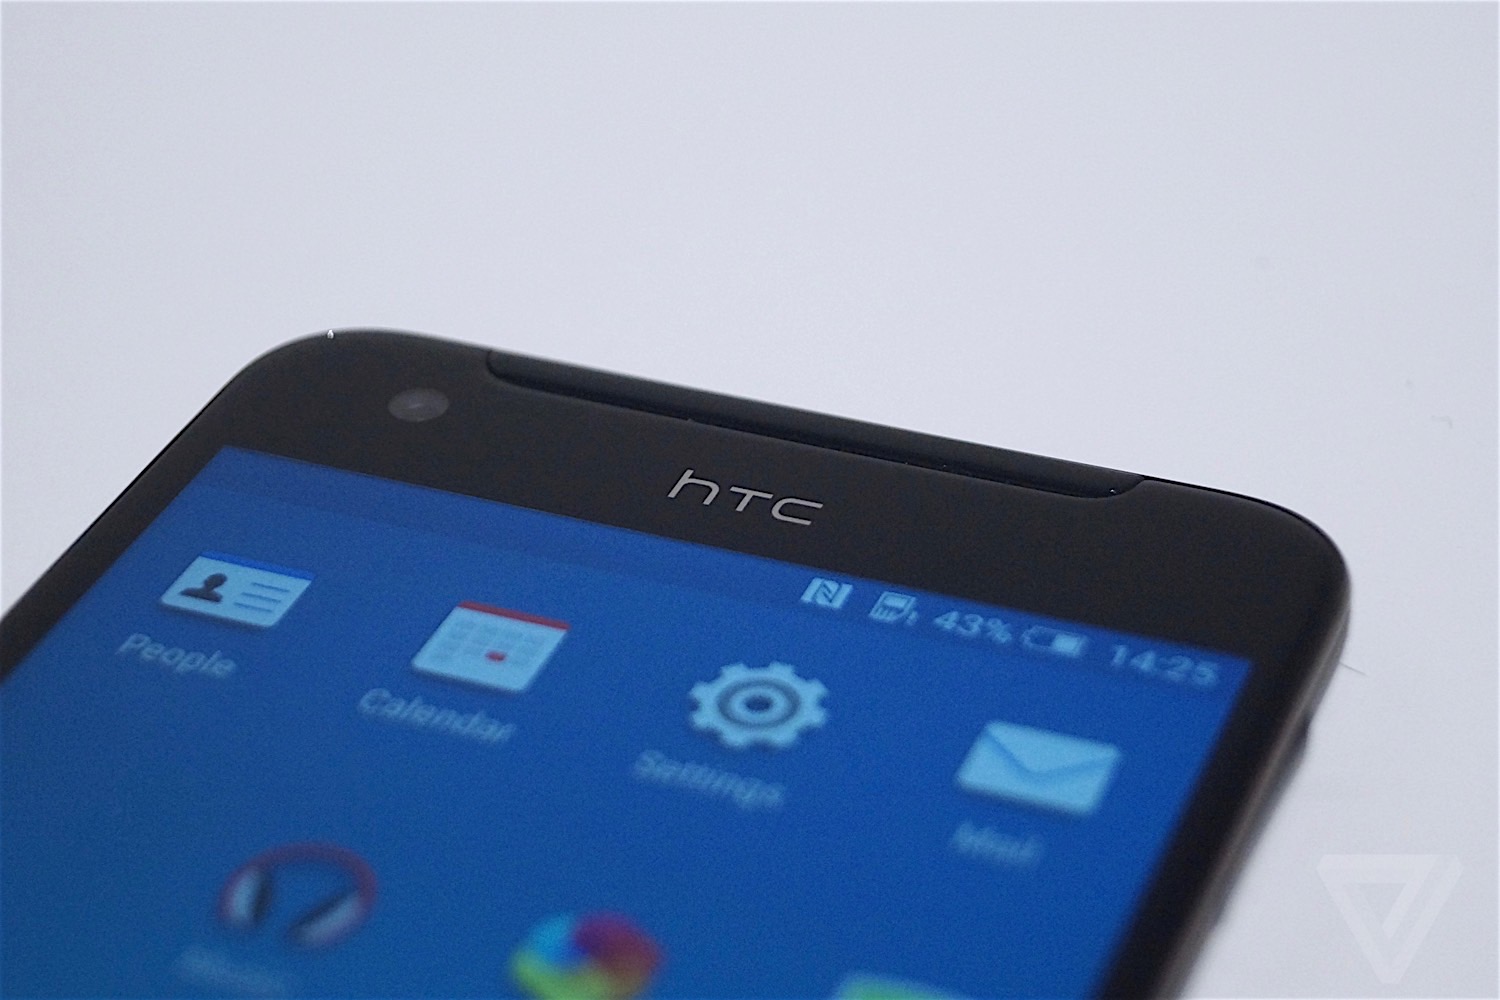 HTC One X9 photos